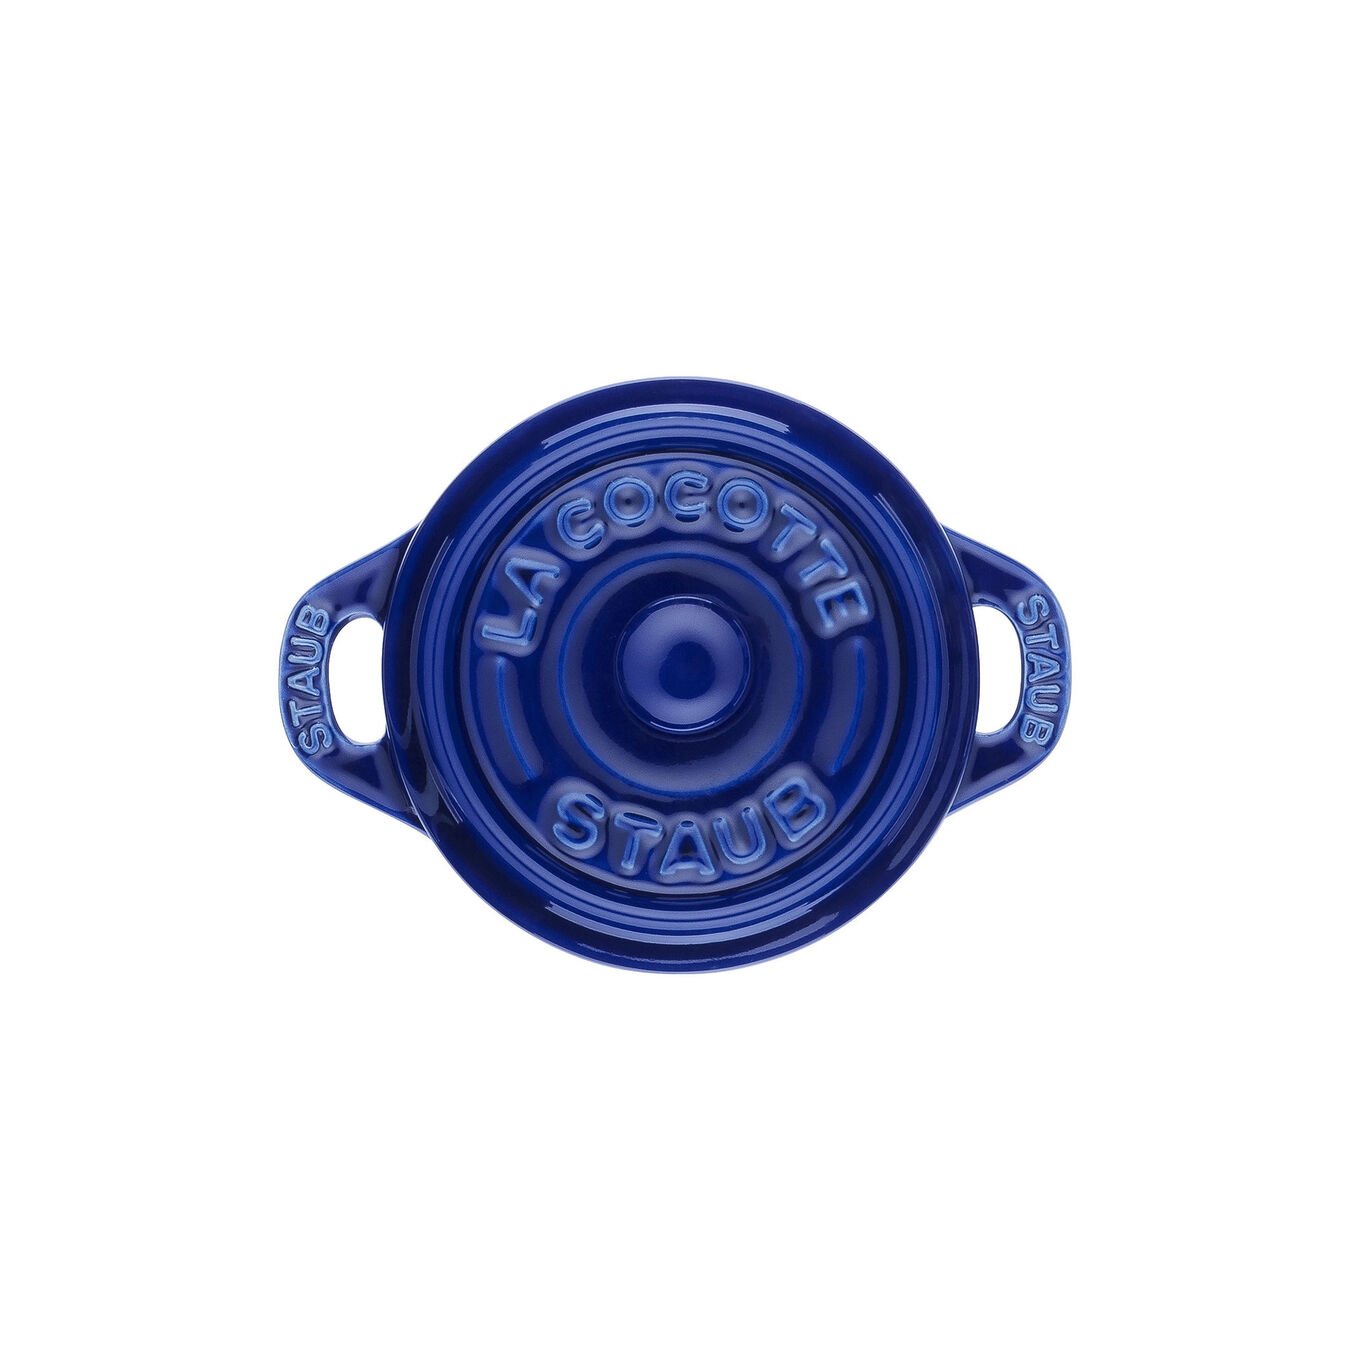 10 cm round Ceramic Mini Cocotte dark-blue,,large 3